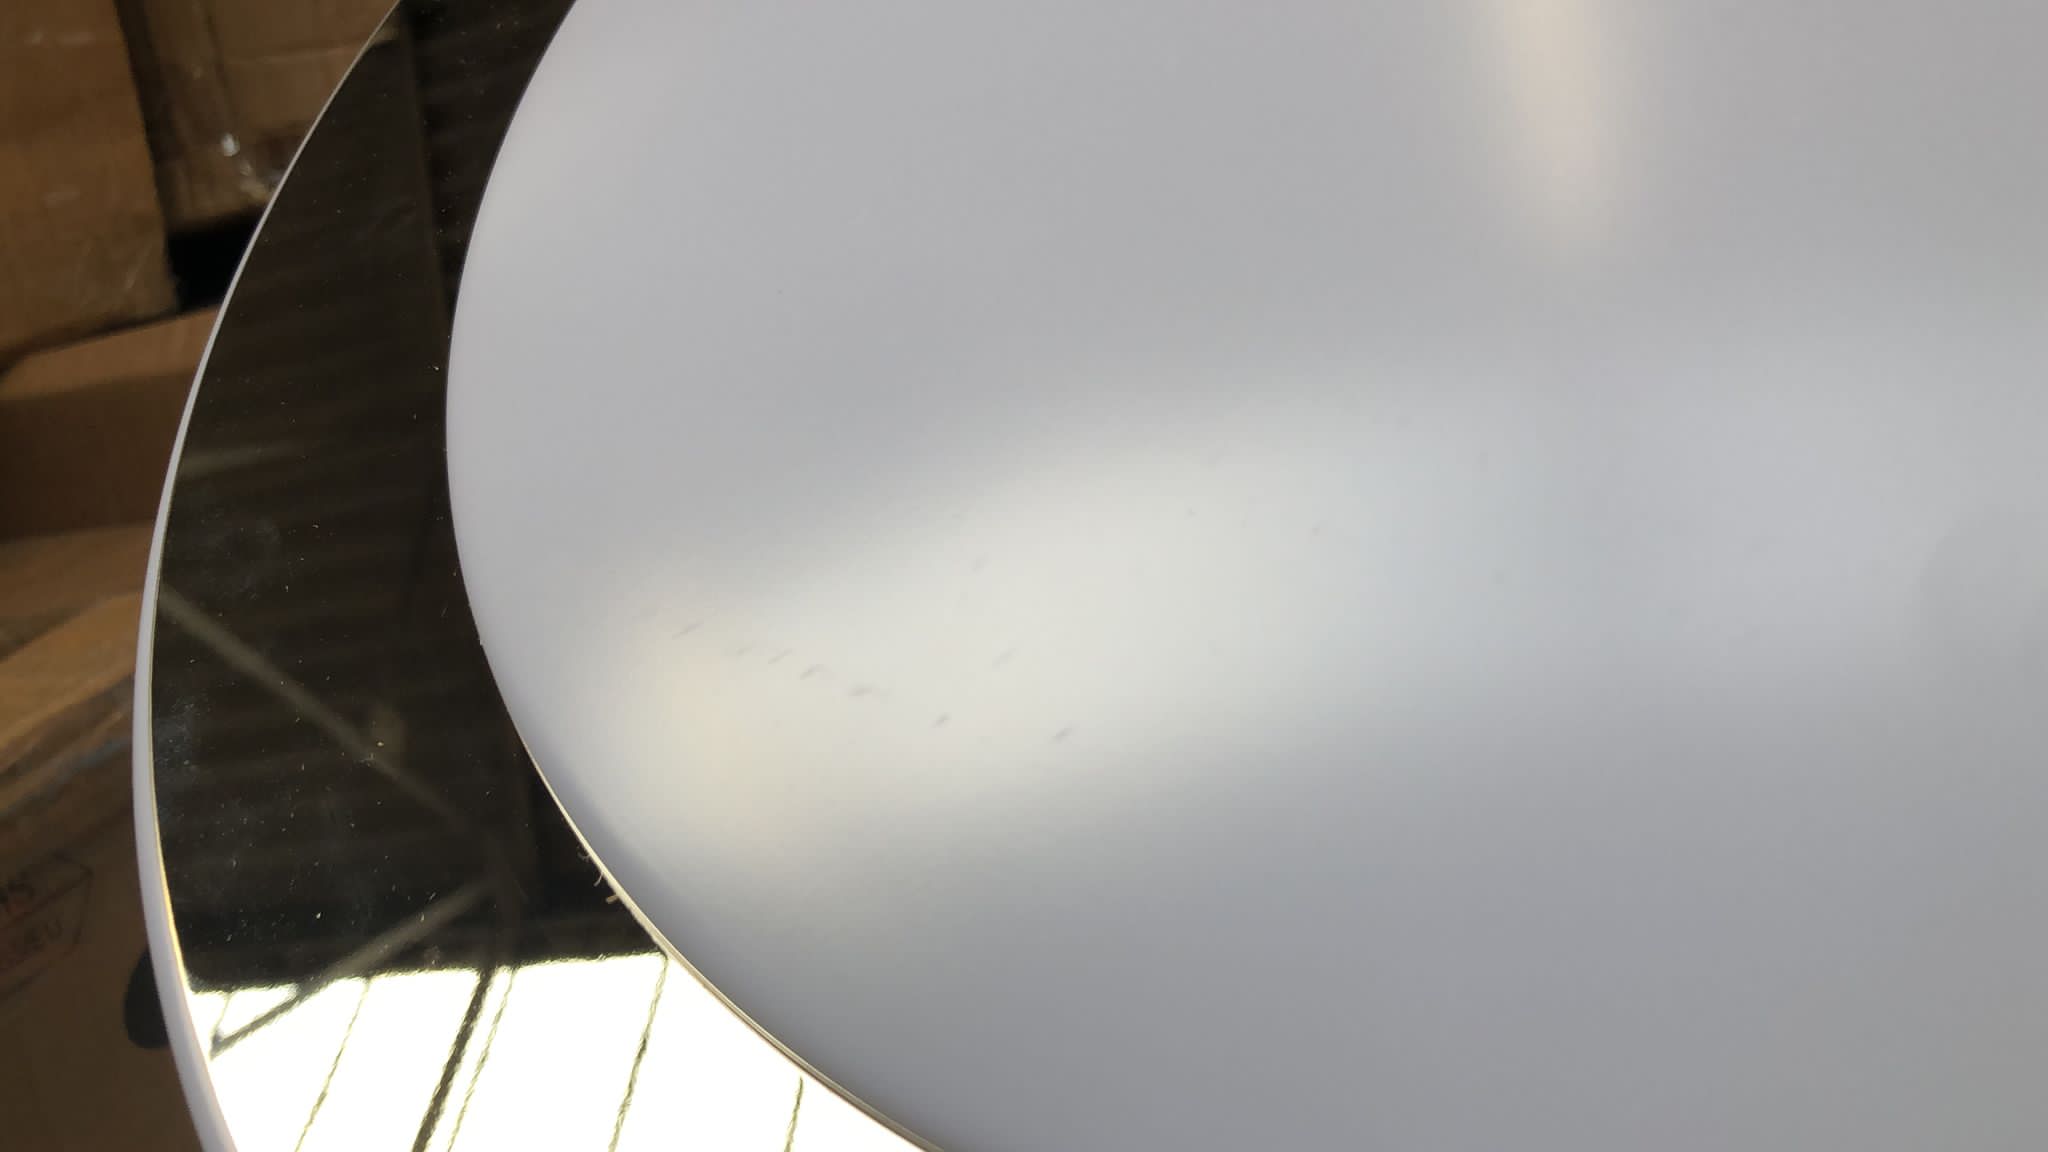 Eglo-Ceiling Light White-95283-5995